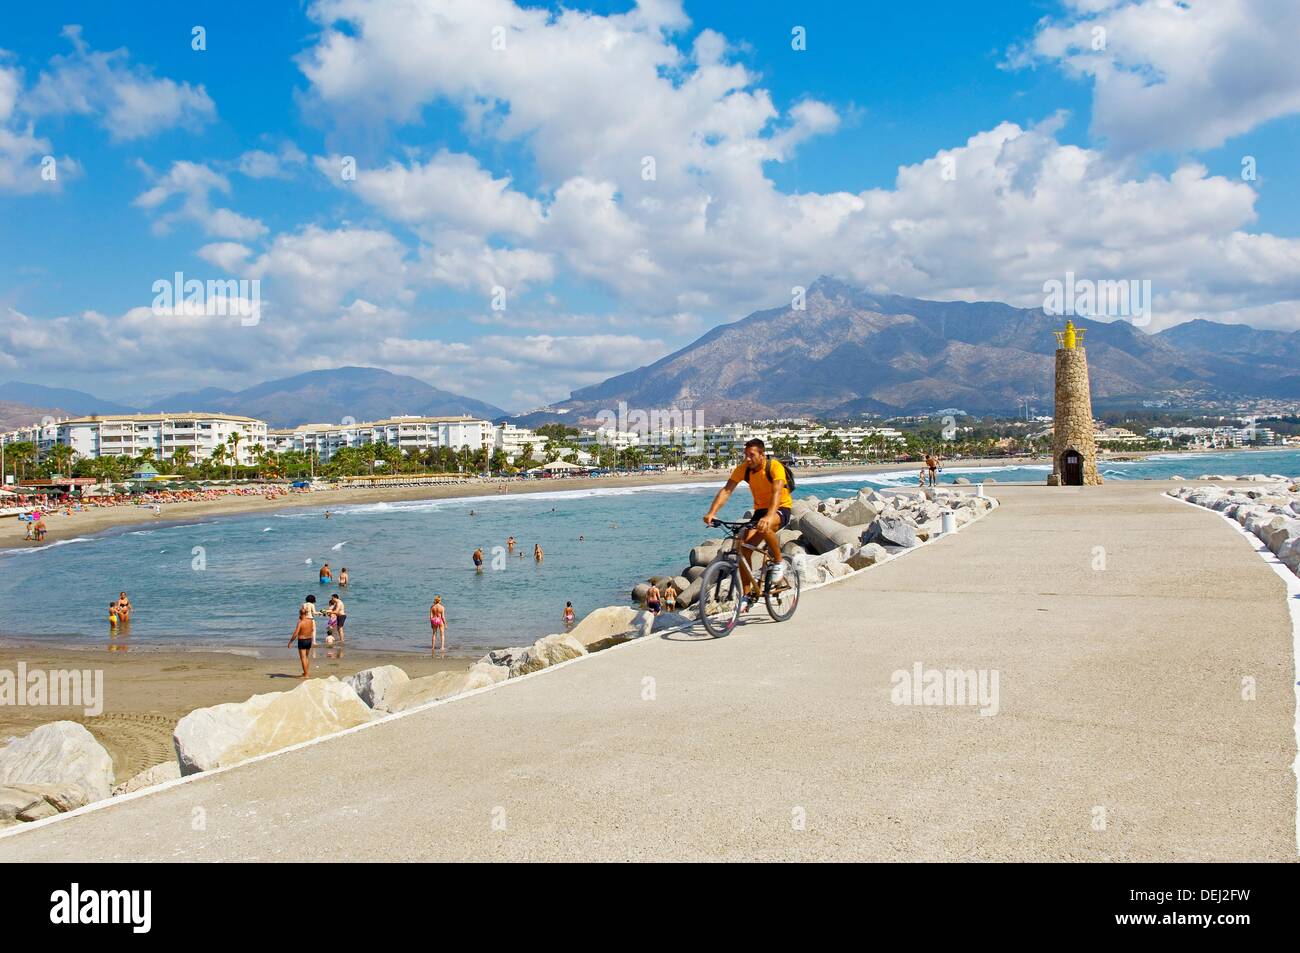 Puerto Banus beach. Marbella. Malaga province. Costa del Sol. Andalucia.  Spain Stock Photo - Alamy